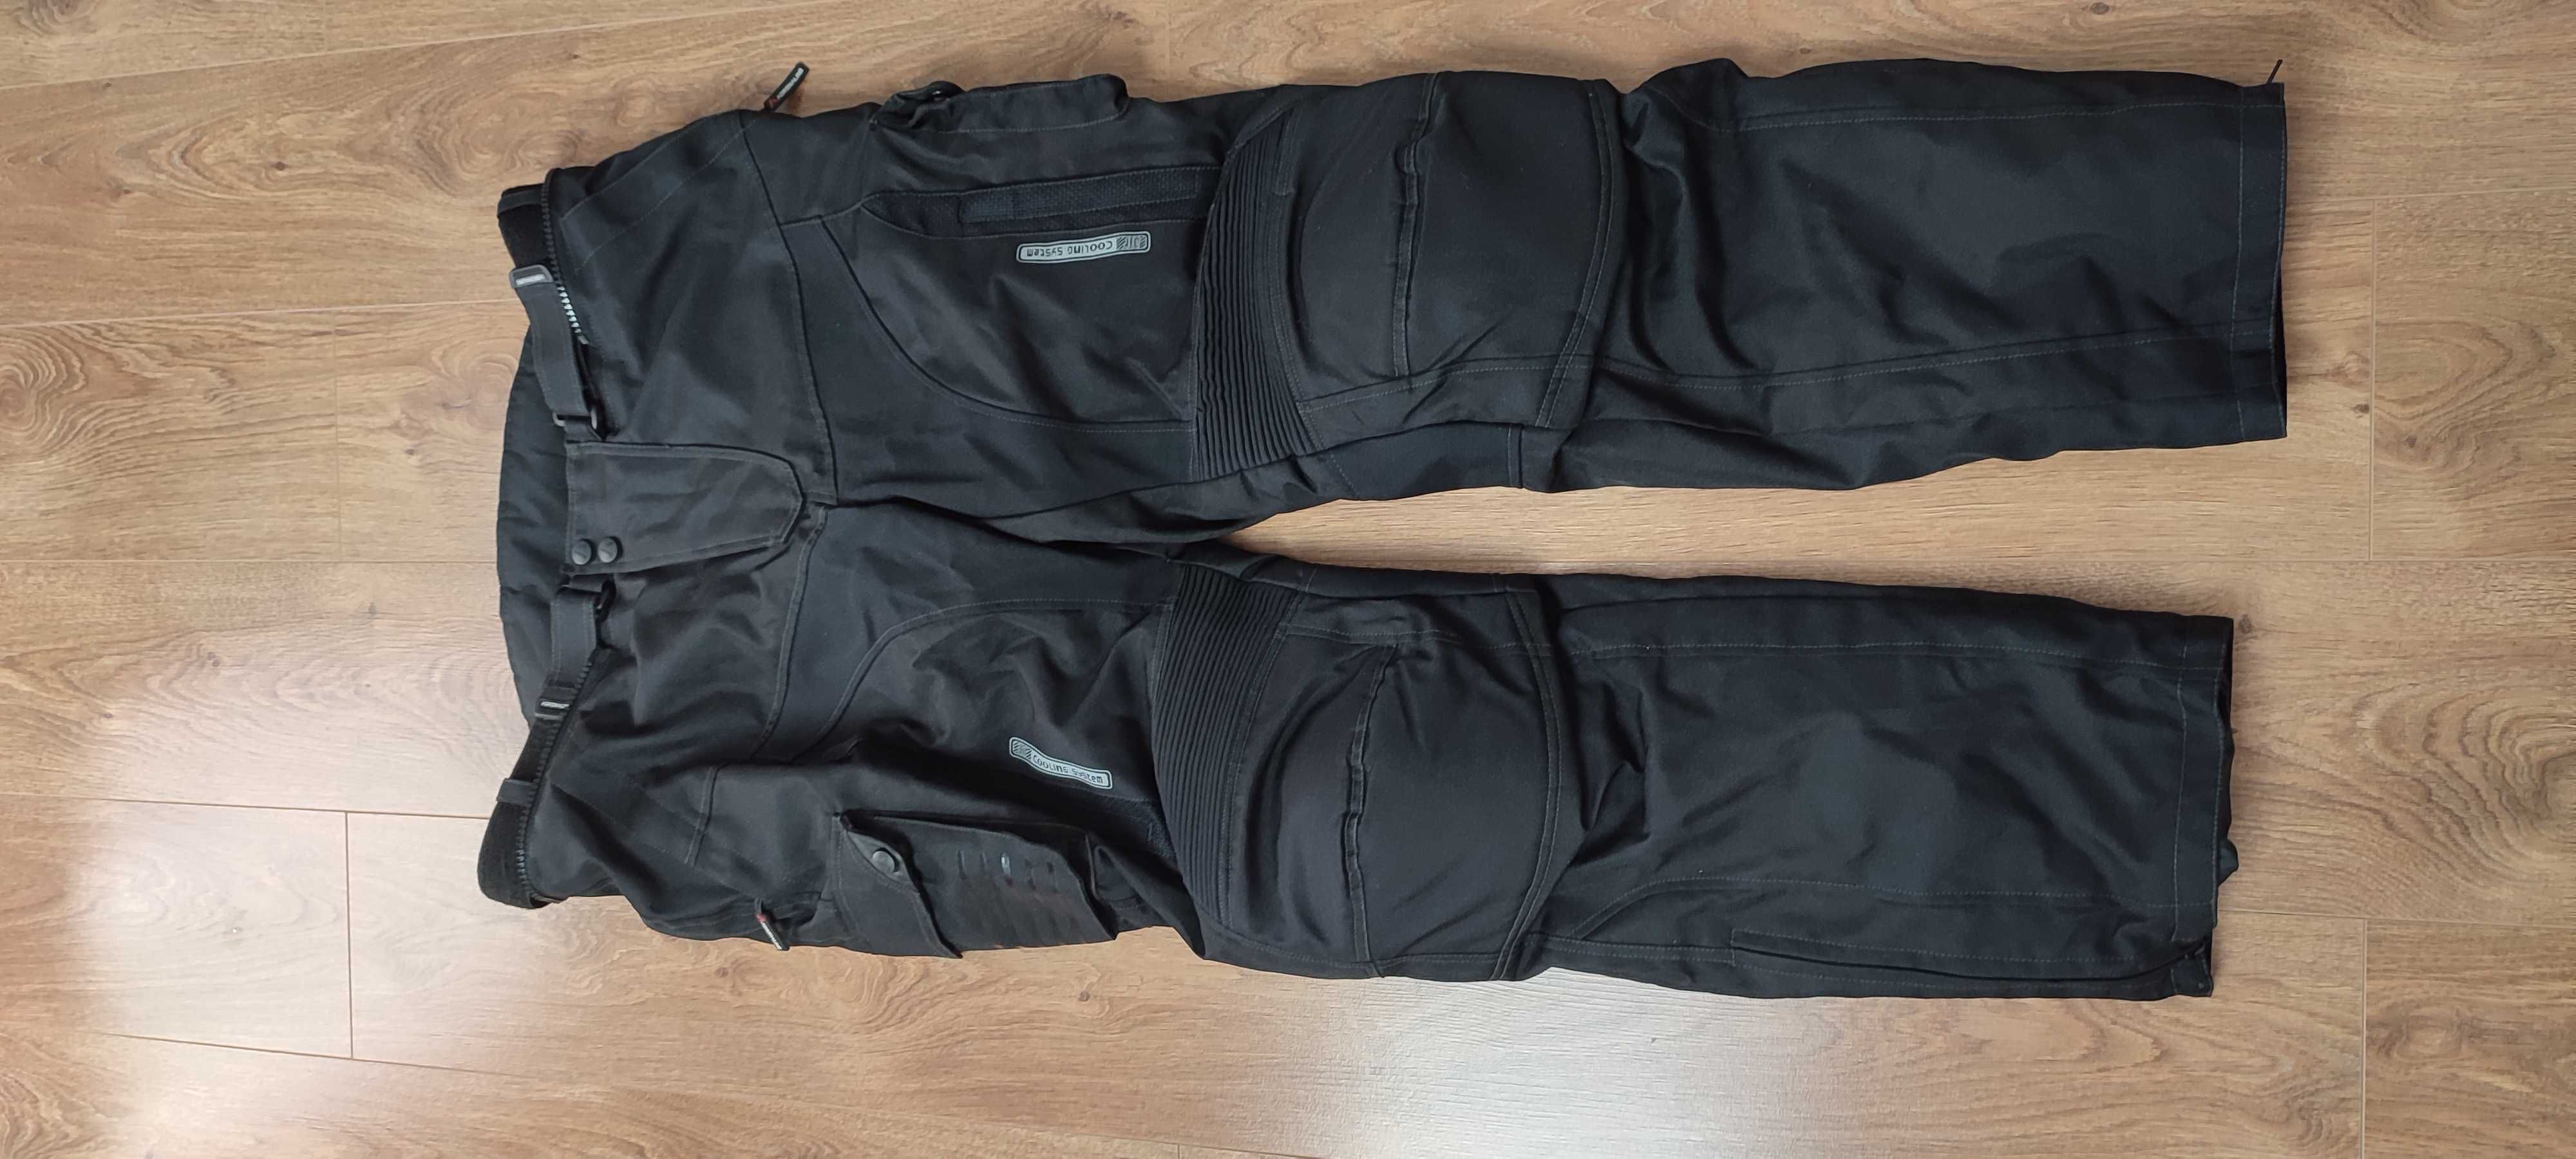 Kurtka i spodnie tekstylne męskie Adrenaline Alaska kolor czarny 3XL